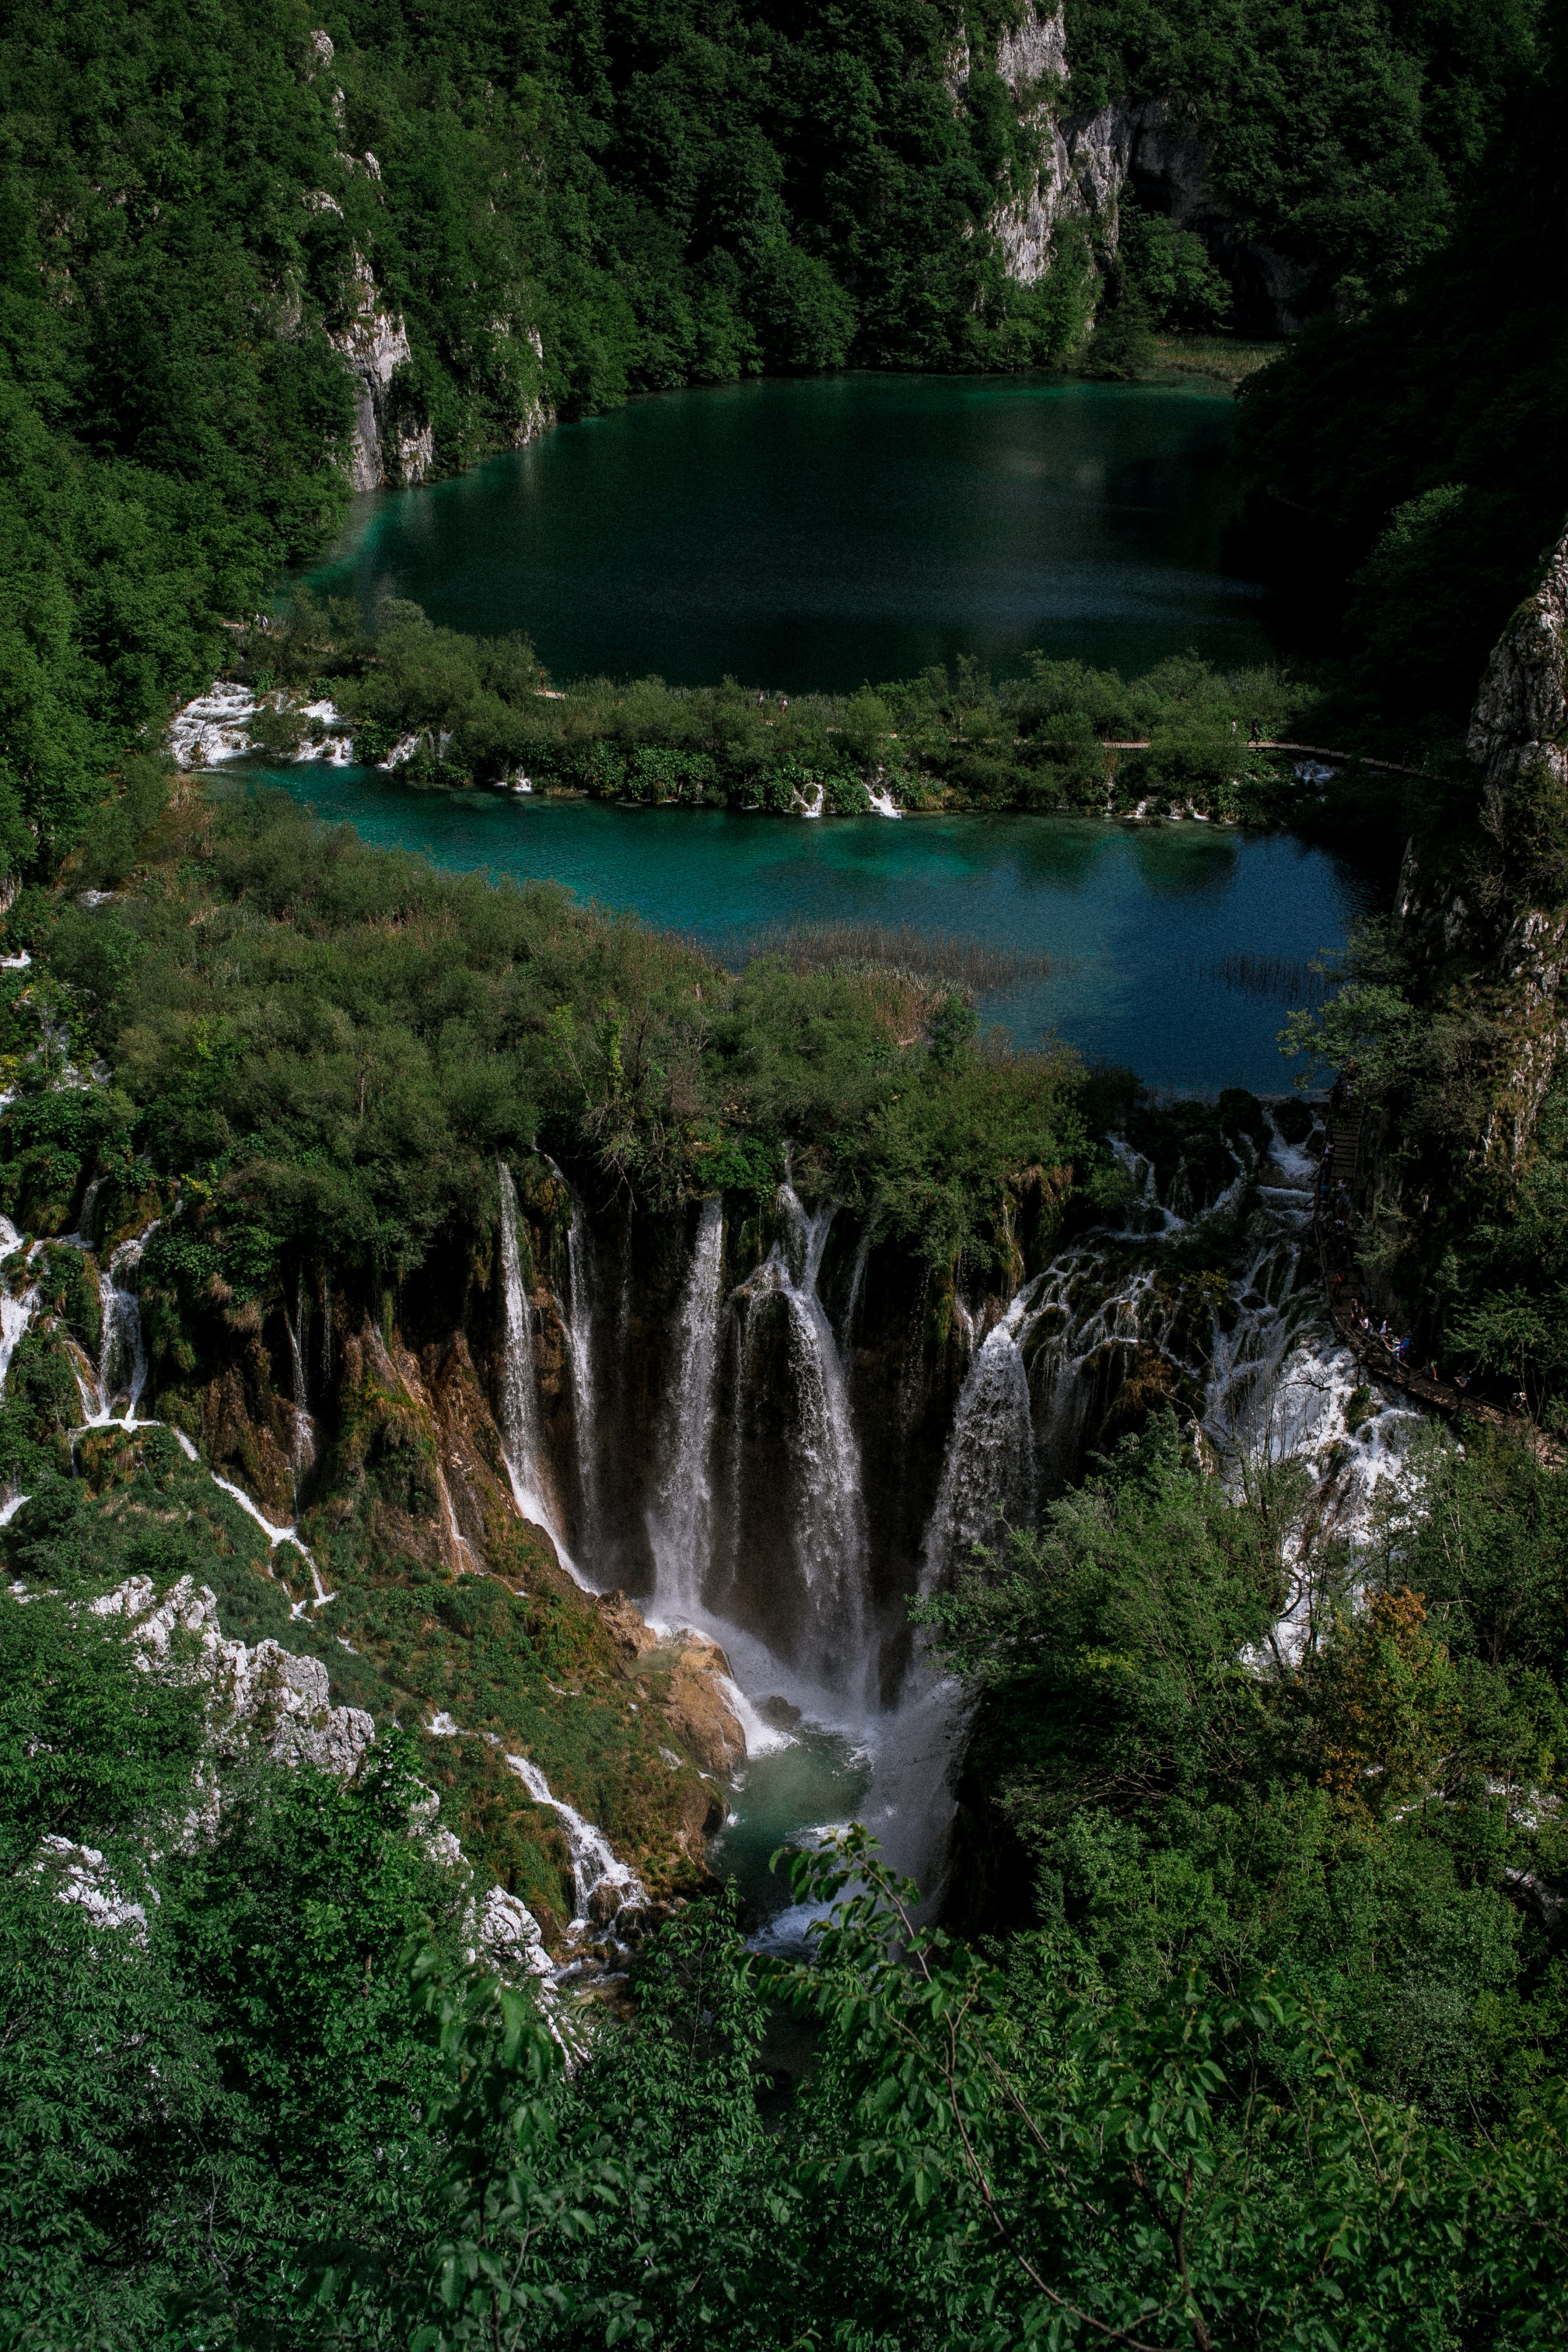 Amazing waterfall flowing among green vegetation